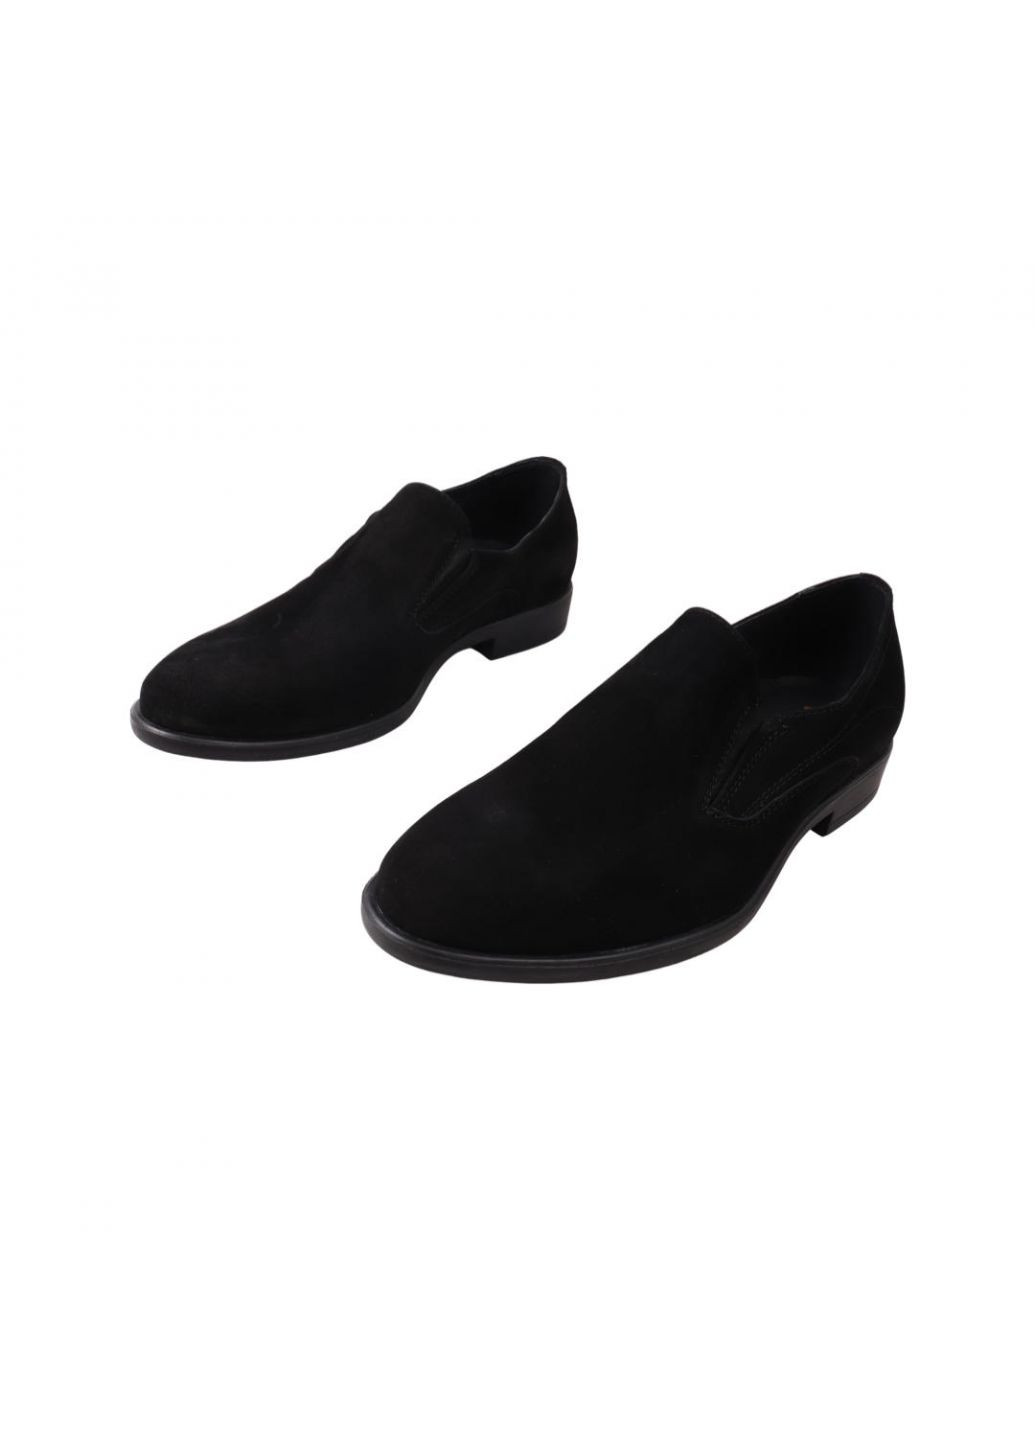 Туфлі чоловічі чорні натуральна замша Vadrus 376-21dt (257438052)